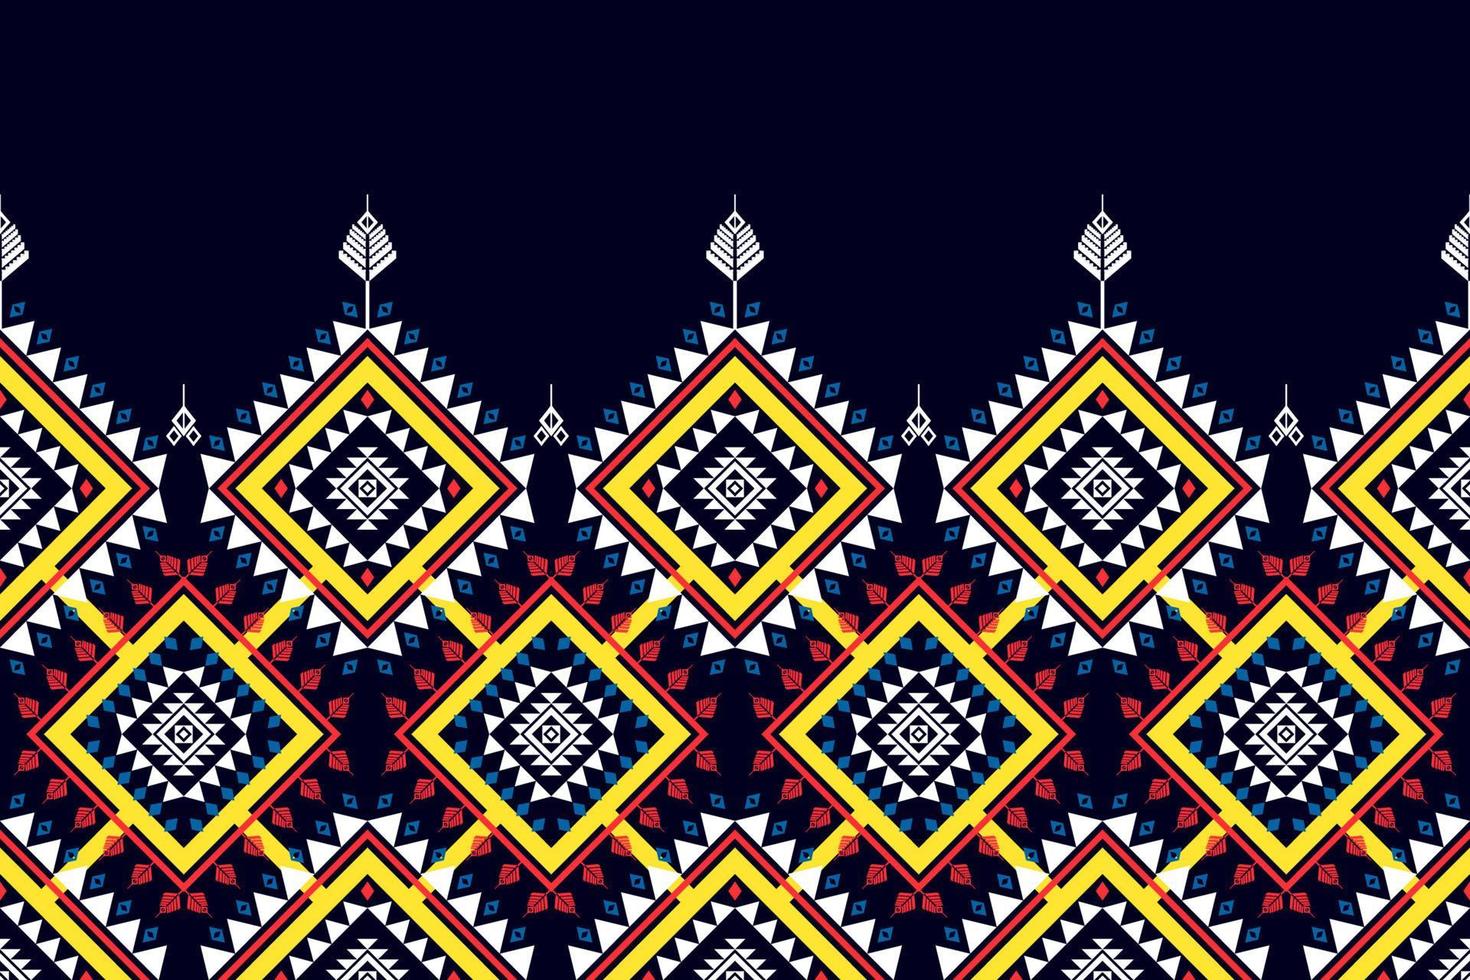 conception de modèle sans couture ethnique géométrique. tapis en tissu aztèque ornement mandala chevron décoration textile papier peint. fond de vecteur de broderie traditionnelle indienne africaine de dinde tribale